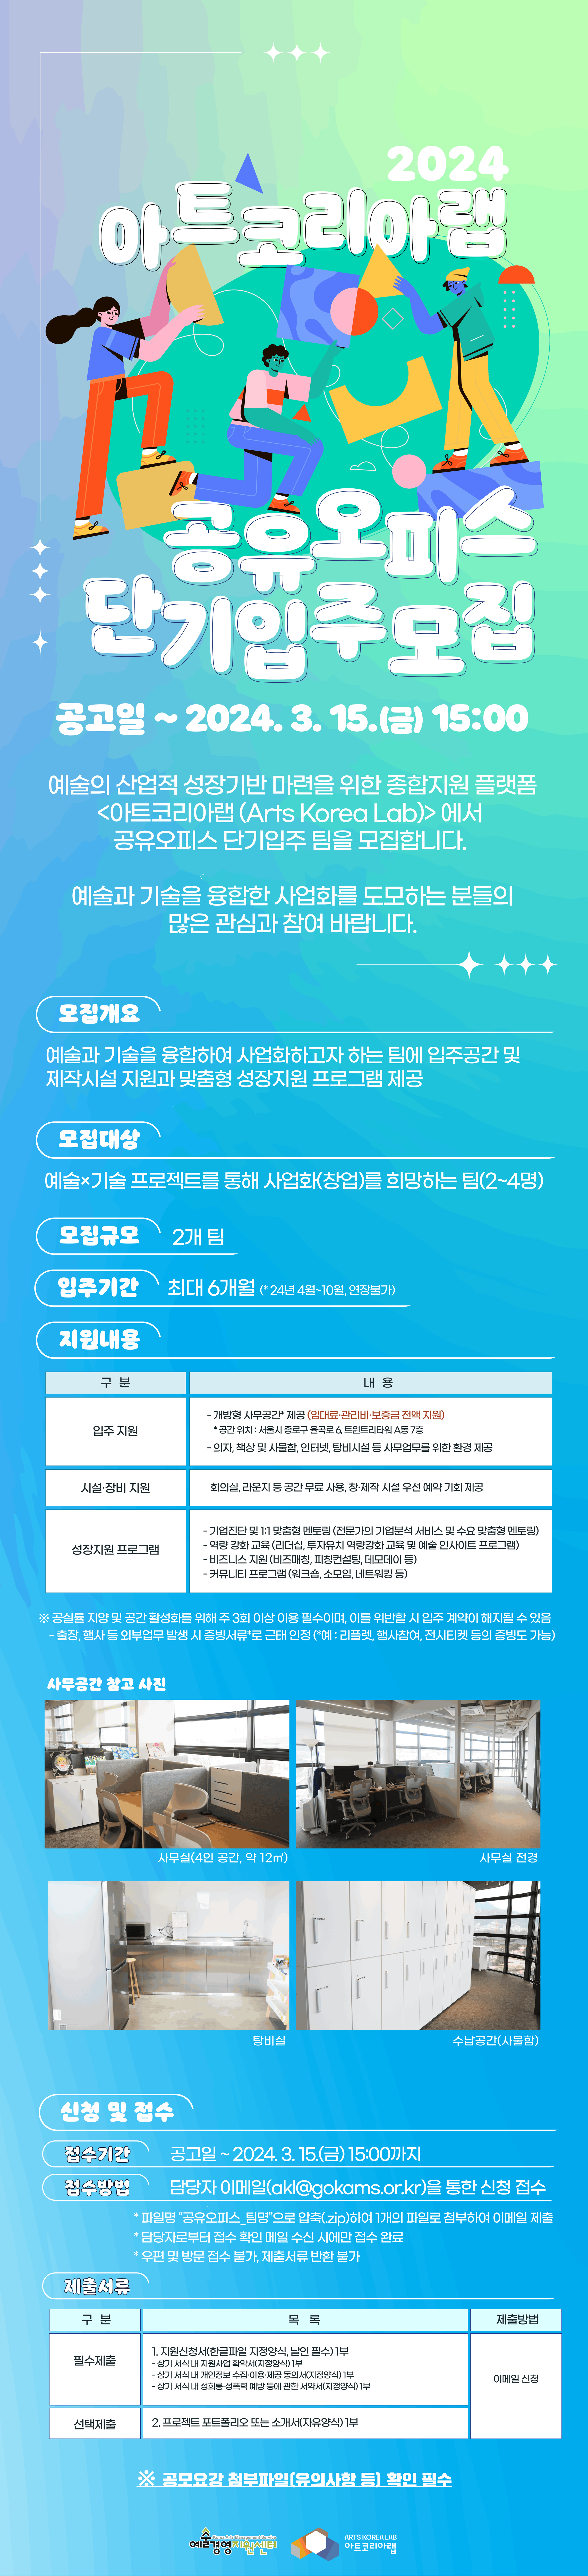 2024 아트코리아랩 공유오피스 단기입주 모집